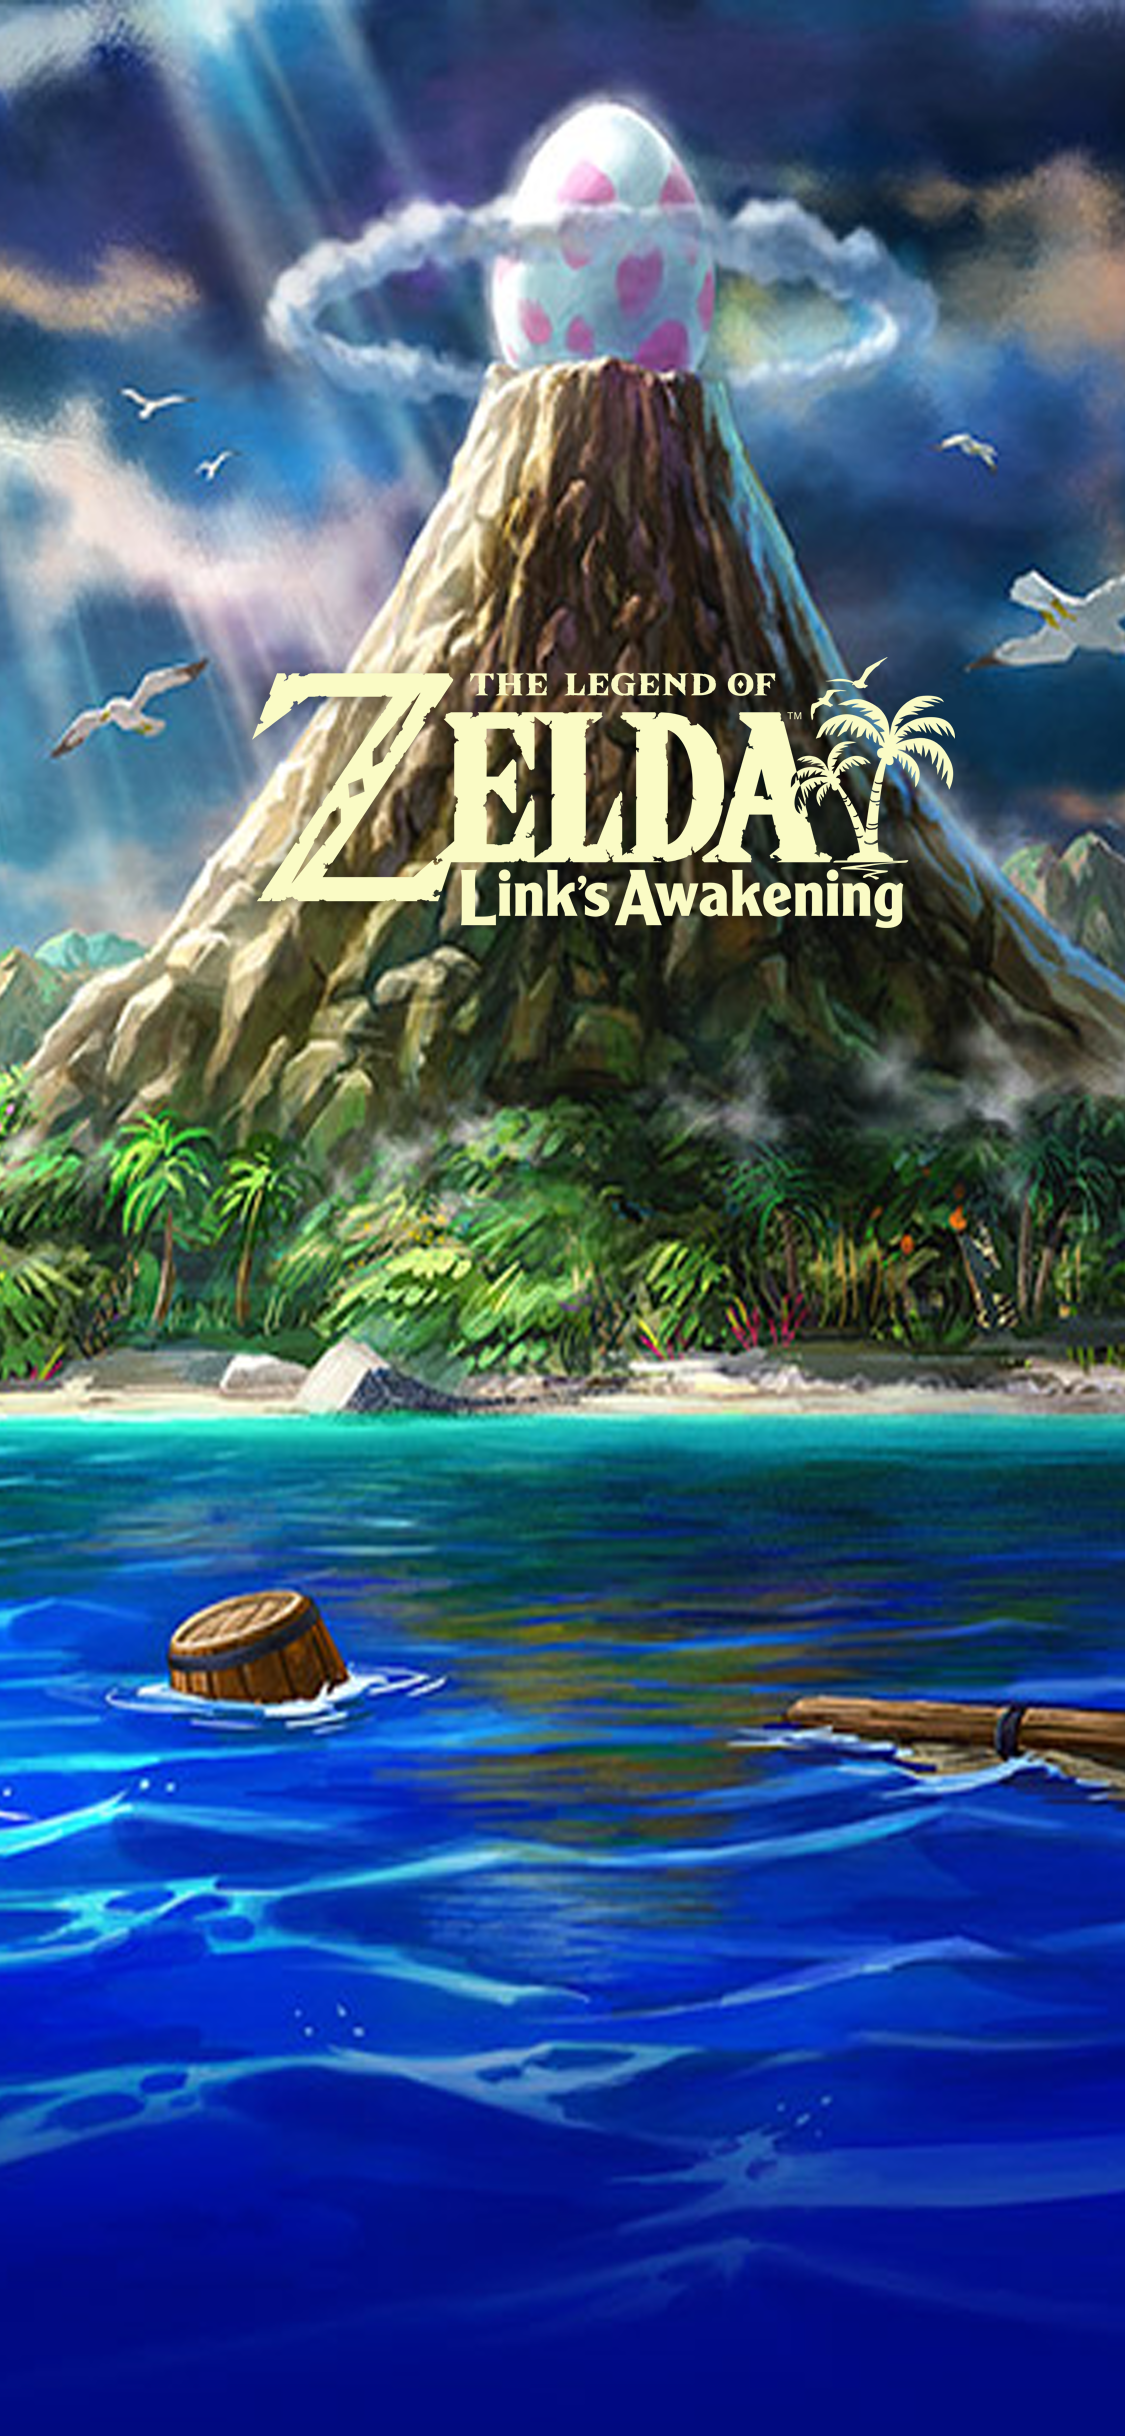 The Legend Of Zelda Links Awakening Wallpapers